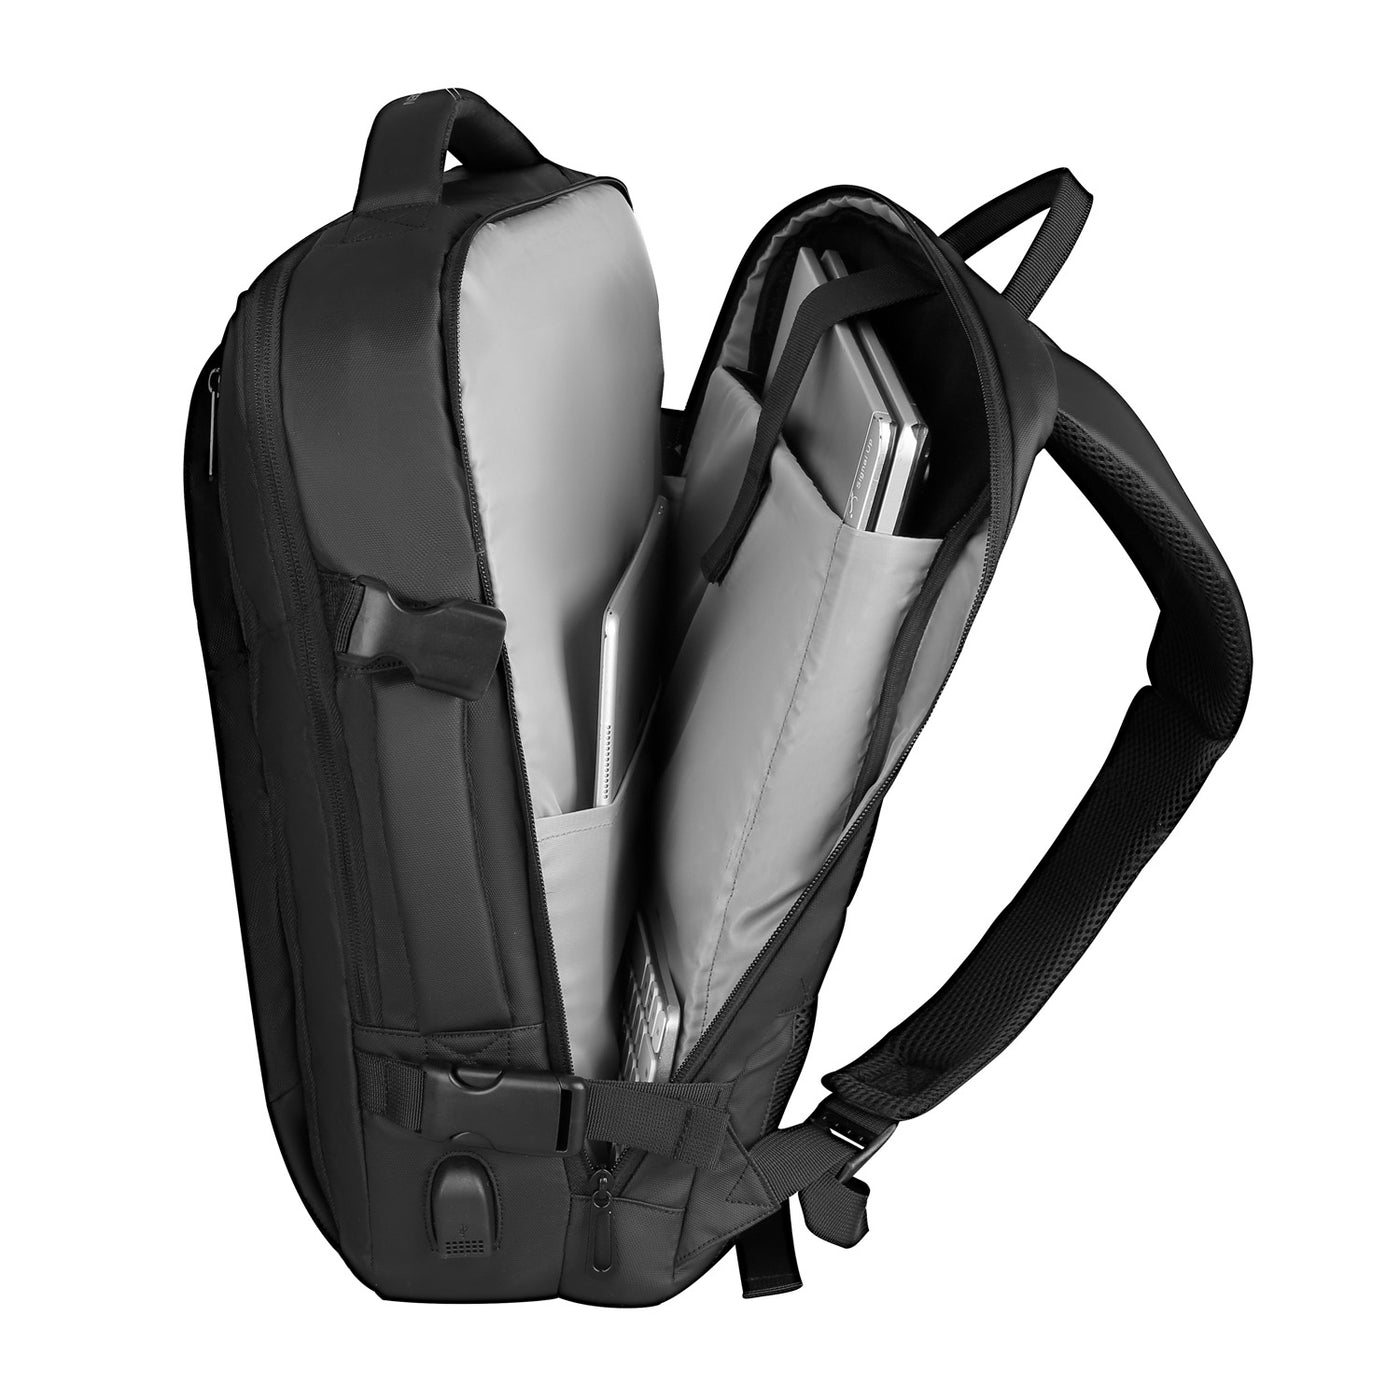 Inside of Mark Ryden minimal black USB Charging backpack. 